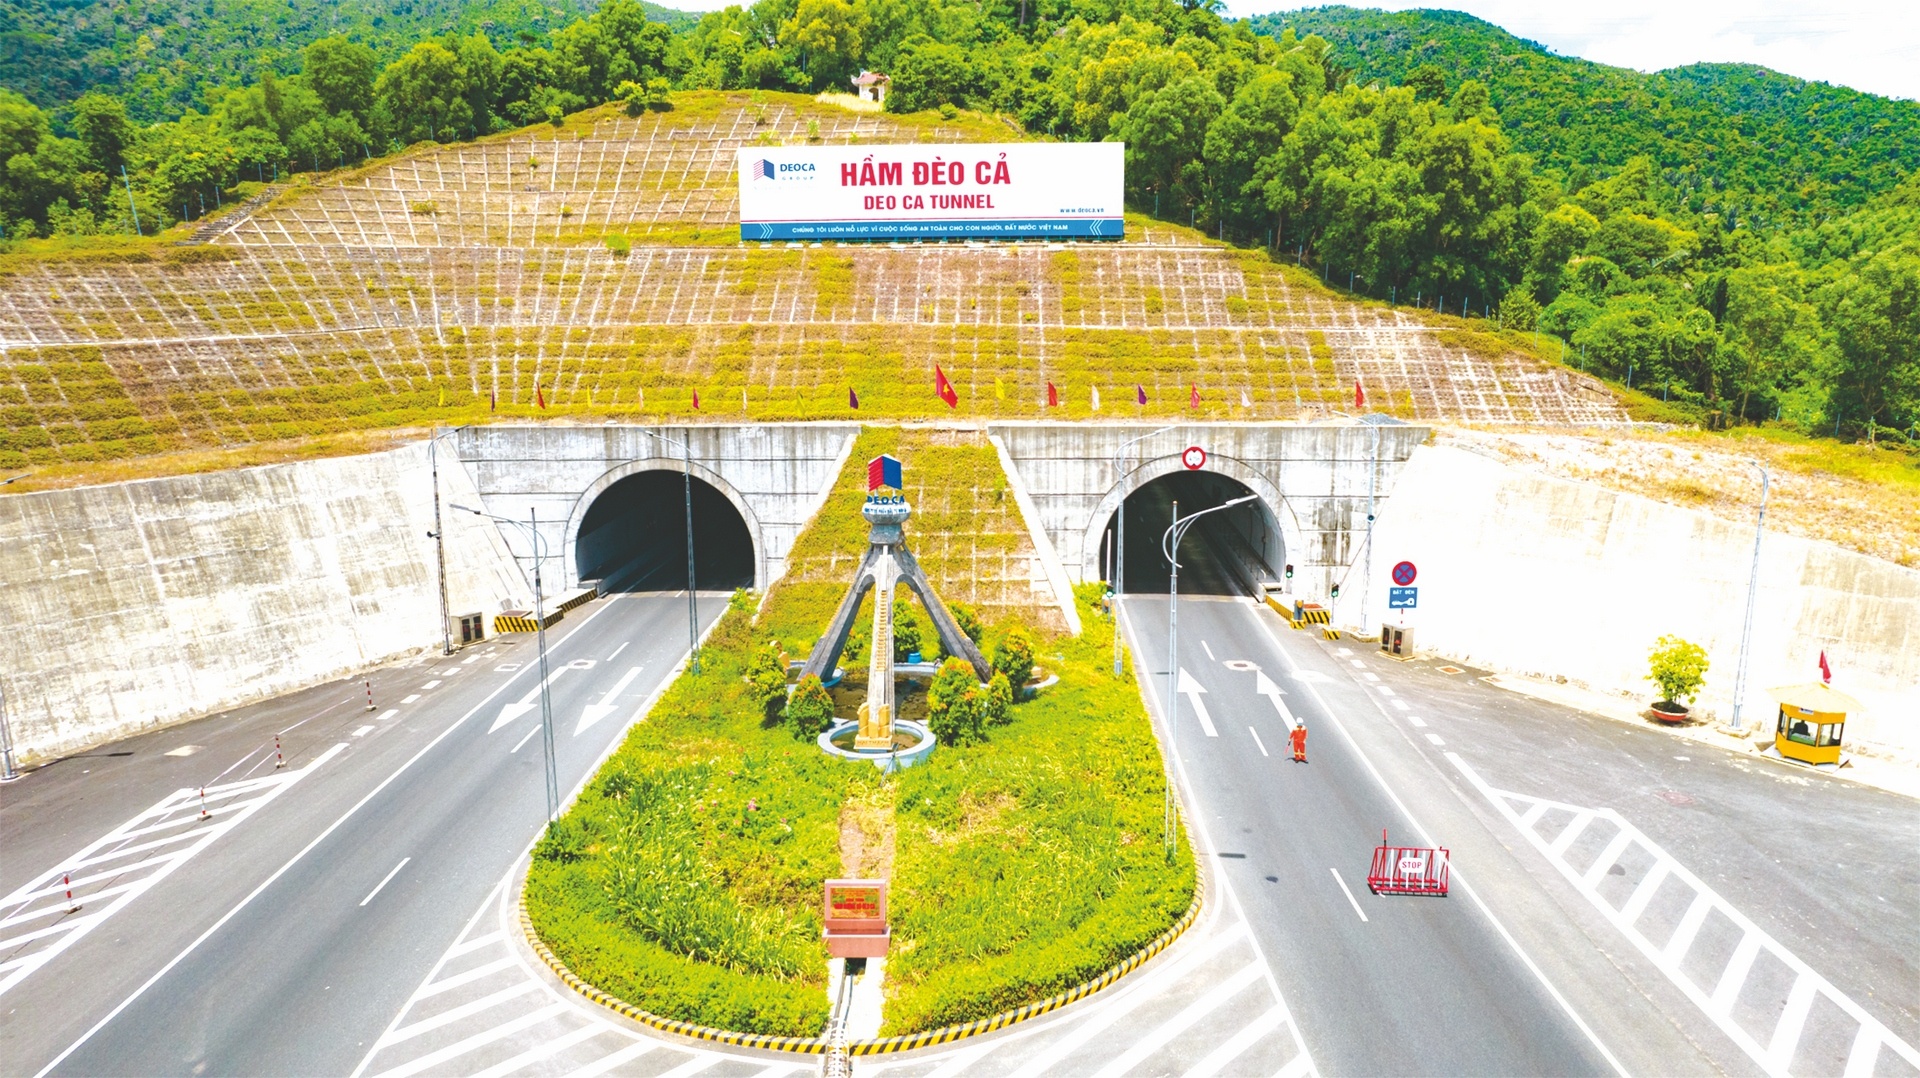 Dự án hầm đường bộ qua Đèo Cả được đề xuất mua lại, do trạm thu phí La Sơn - Tuý Loan có bất cập về vị trí đặt trạm. Ảnh: Thời báo ngân hàng